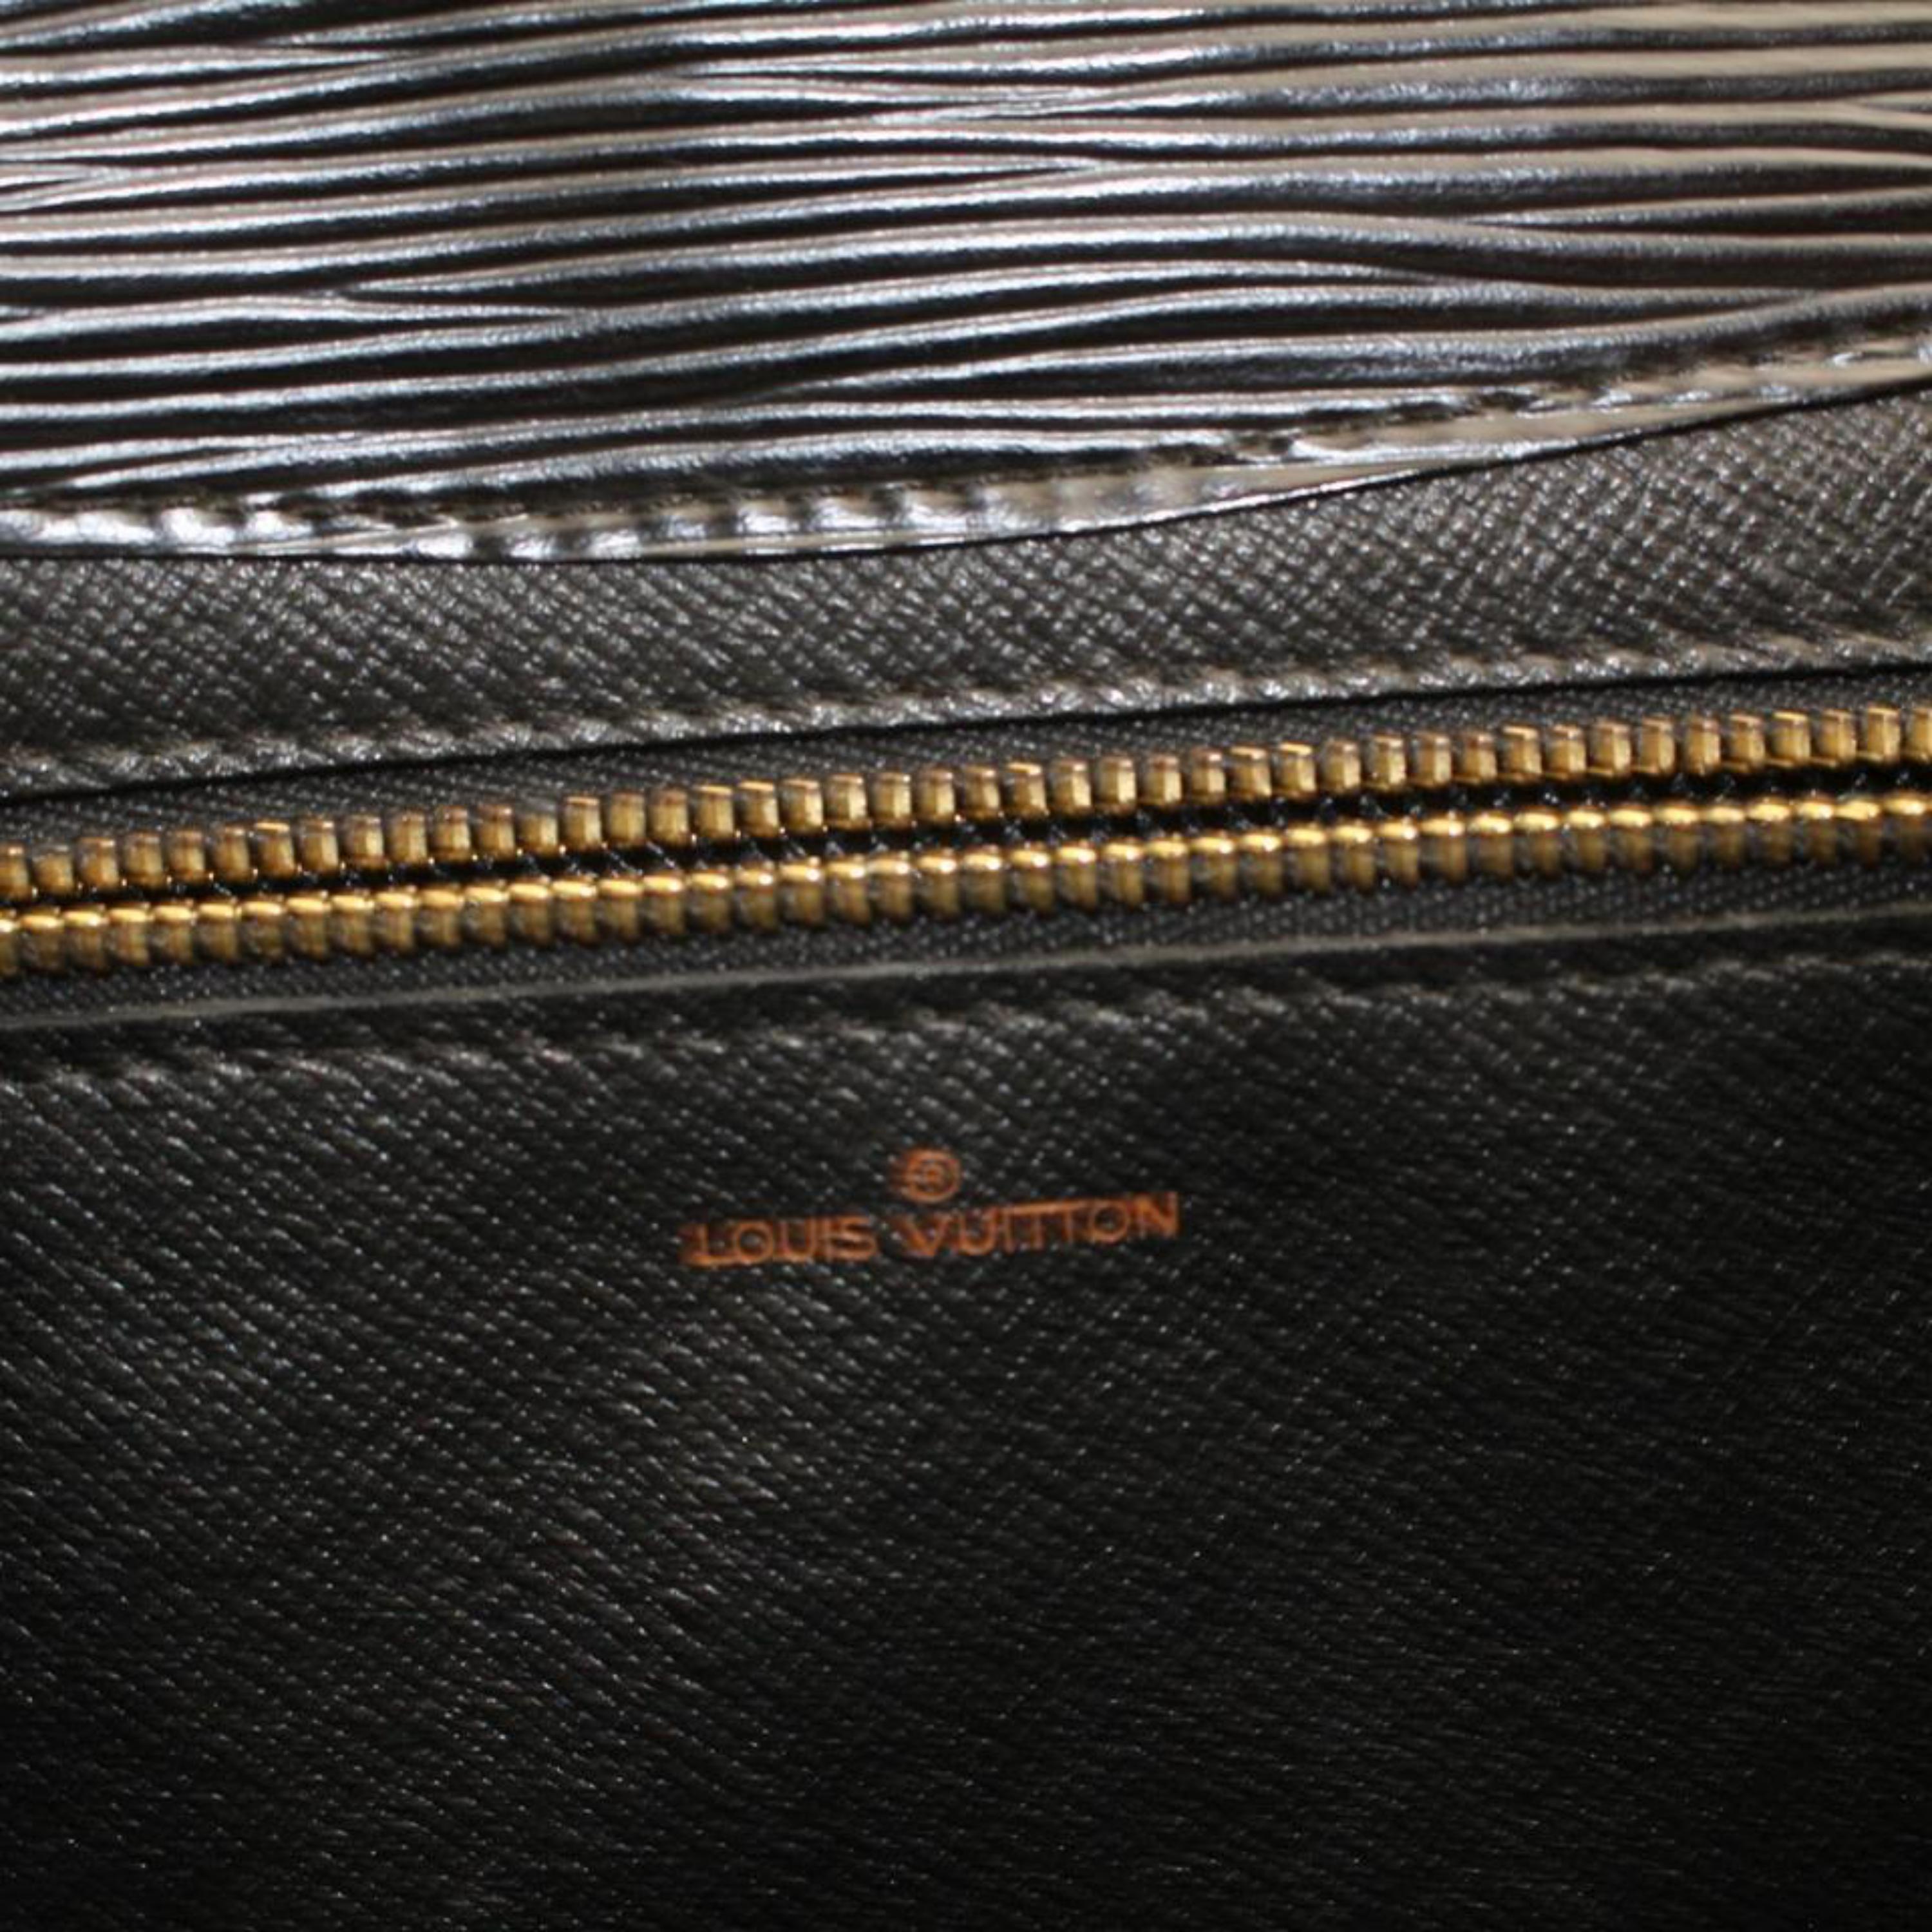 Louis Vuitton Pochette Noir Art Deco Envelope 868802 Black Leather Clutch For Sale 3